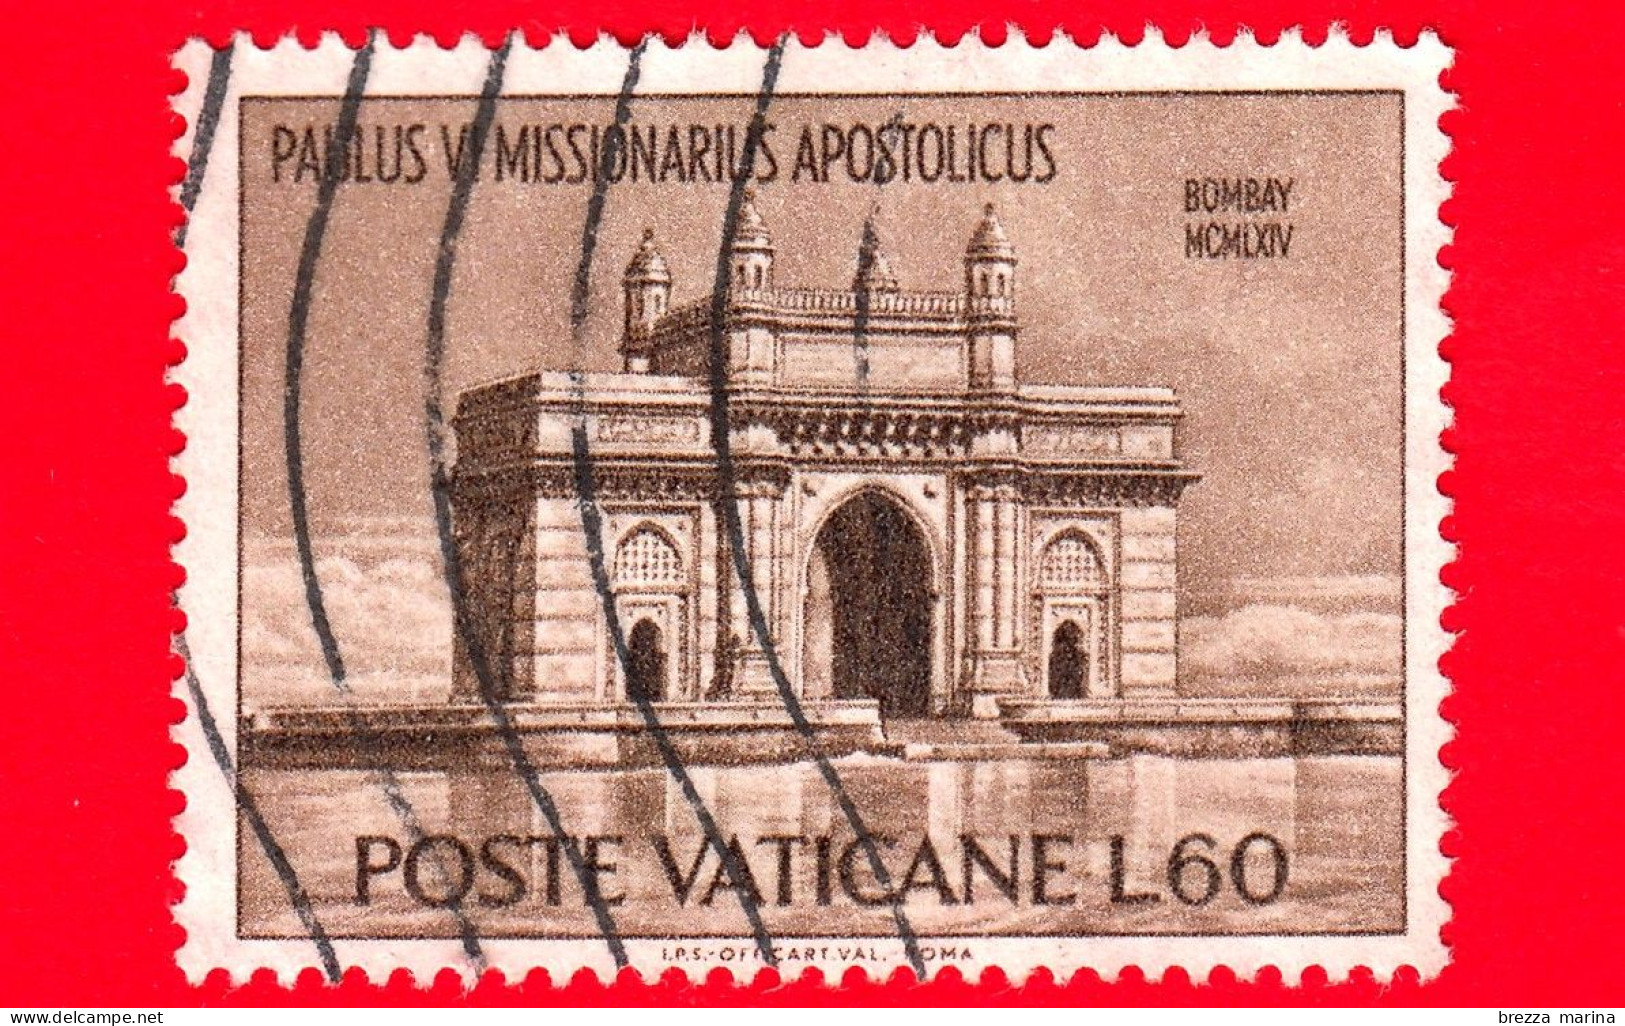 VATICANO  - Usato - 1964 - Viaggi Di Paolo VI In India - Porta Dell'India - Bombay - 60 - Usati